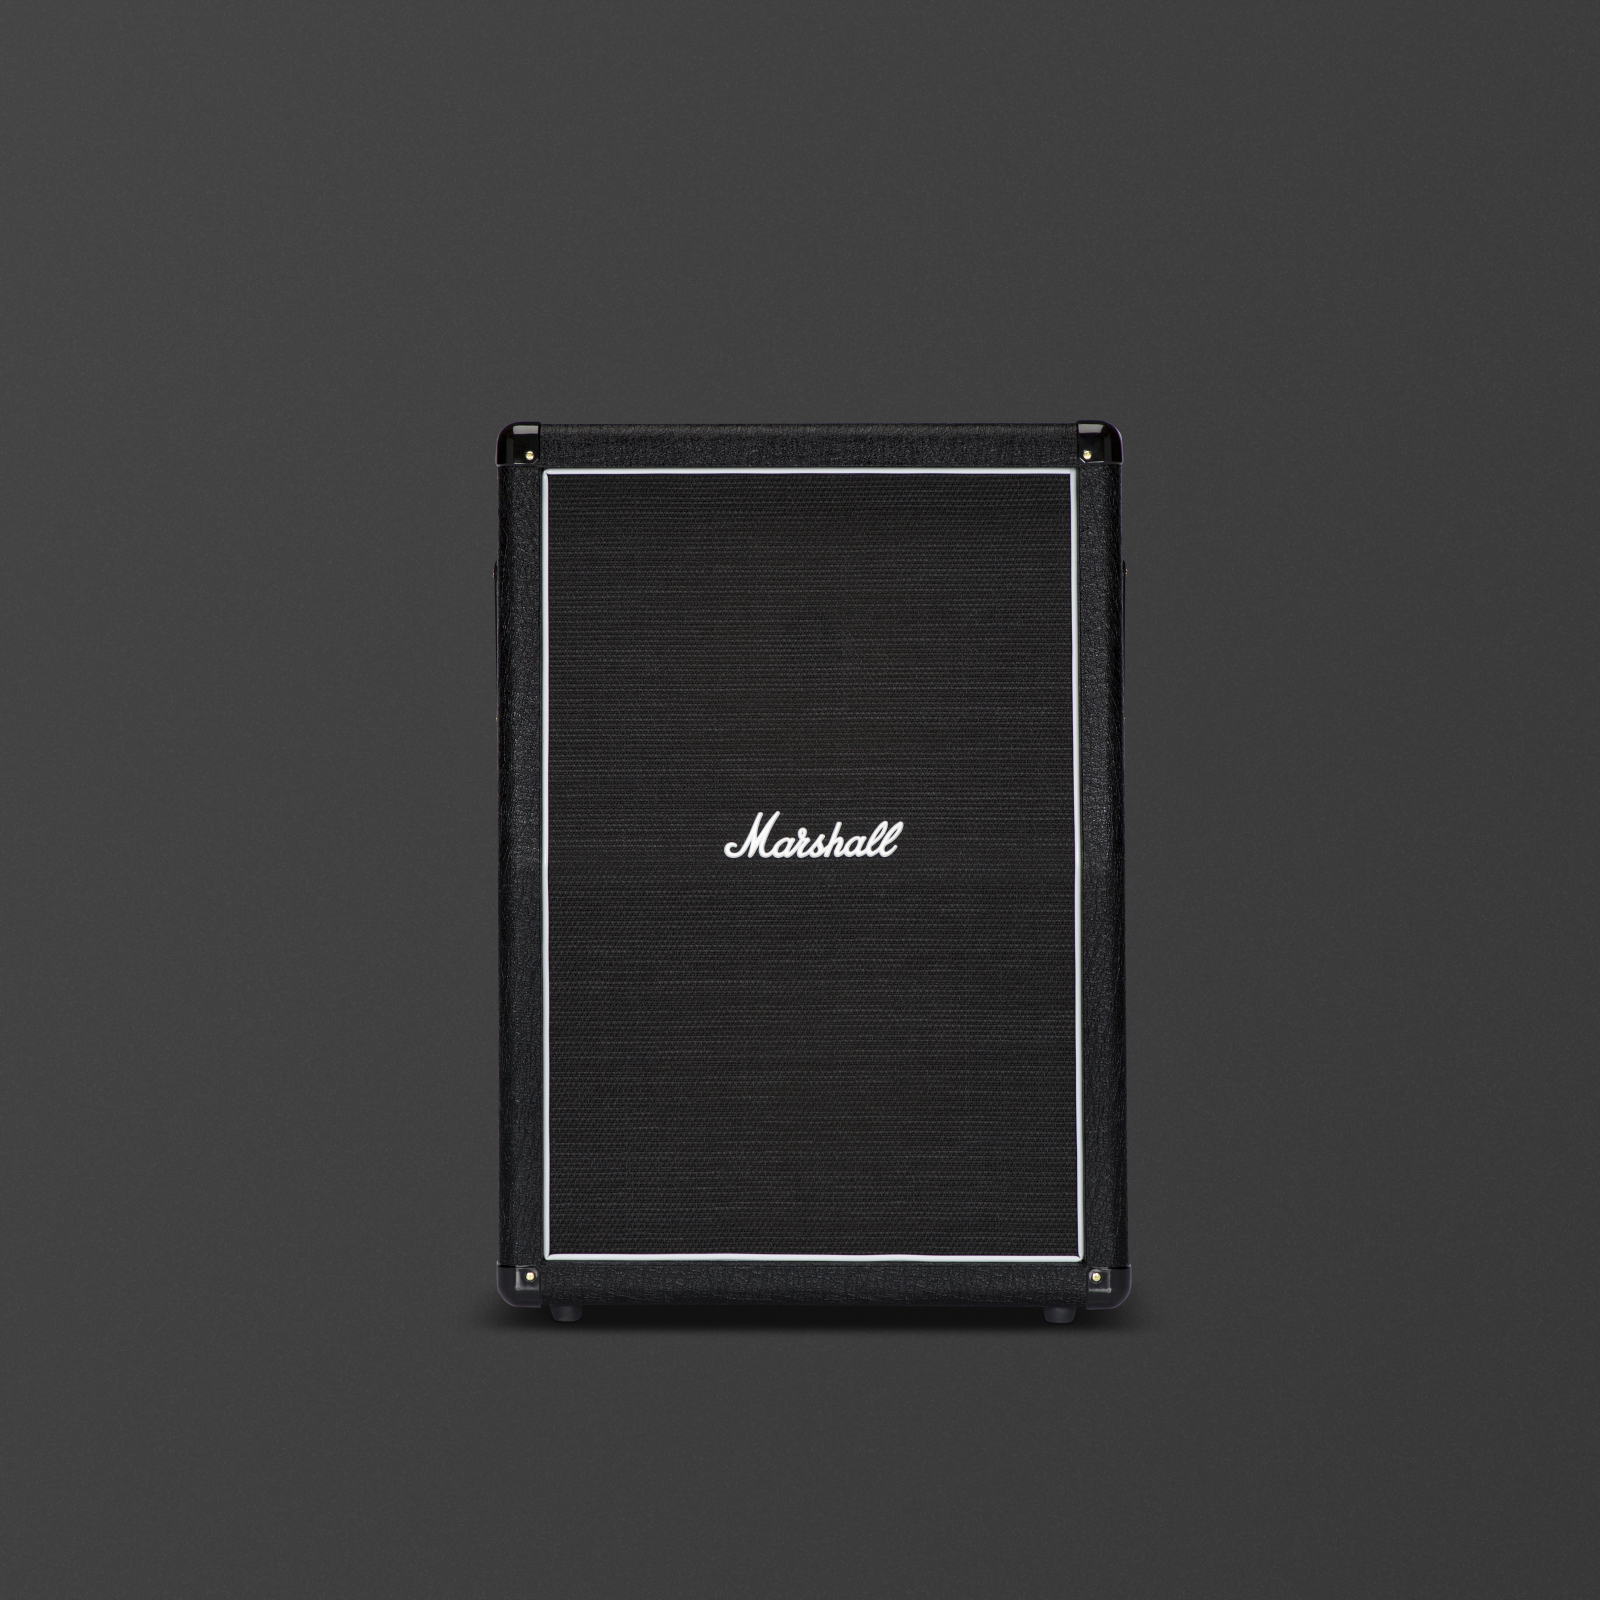 Ein schwarzes Marshall MX 2x12 Angled Cabinet von vorne gesehen